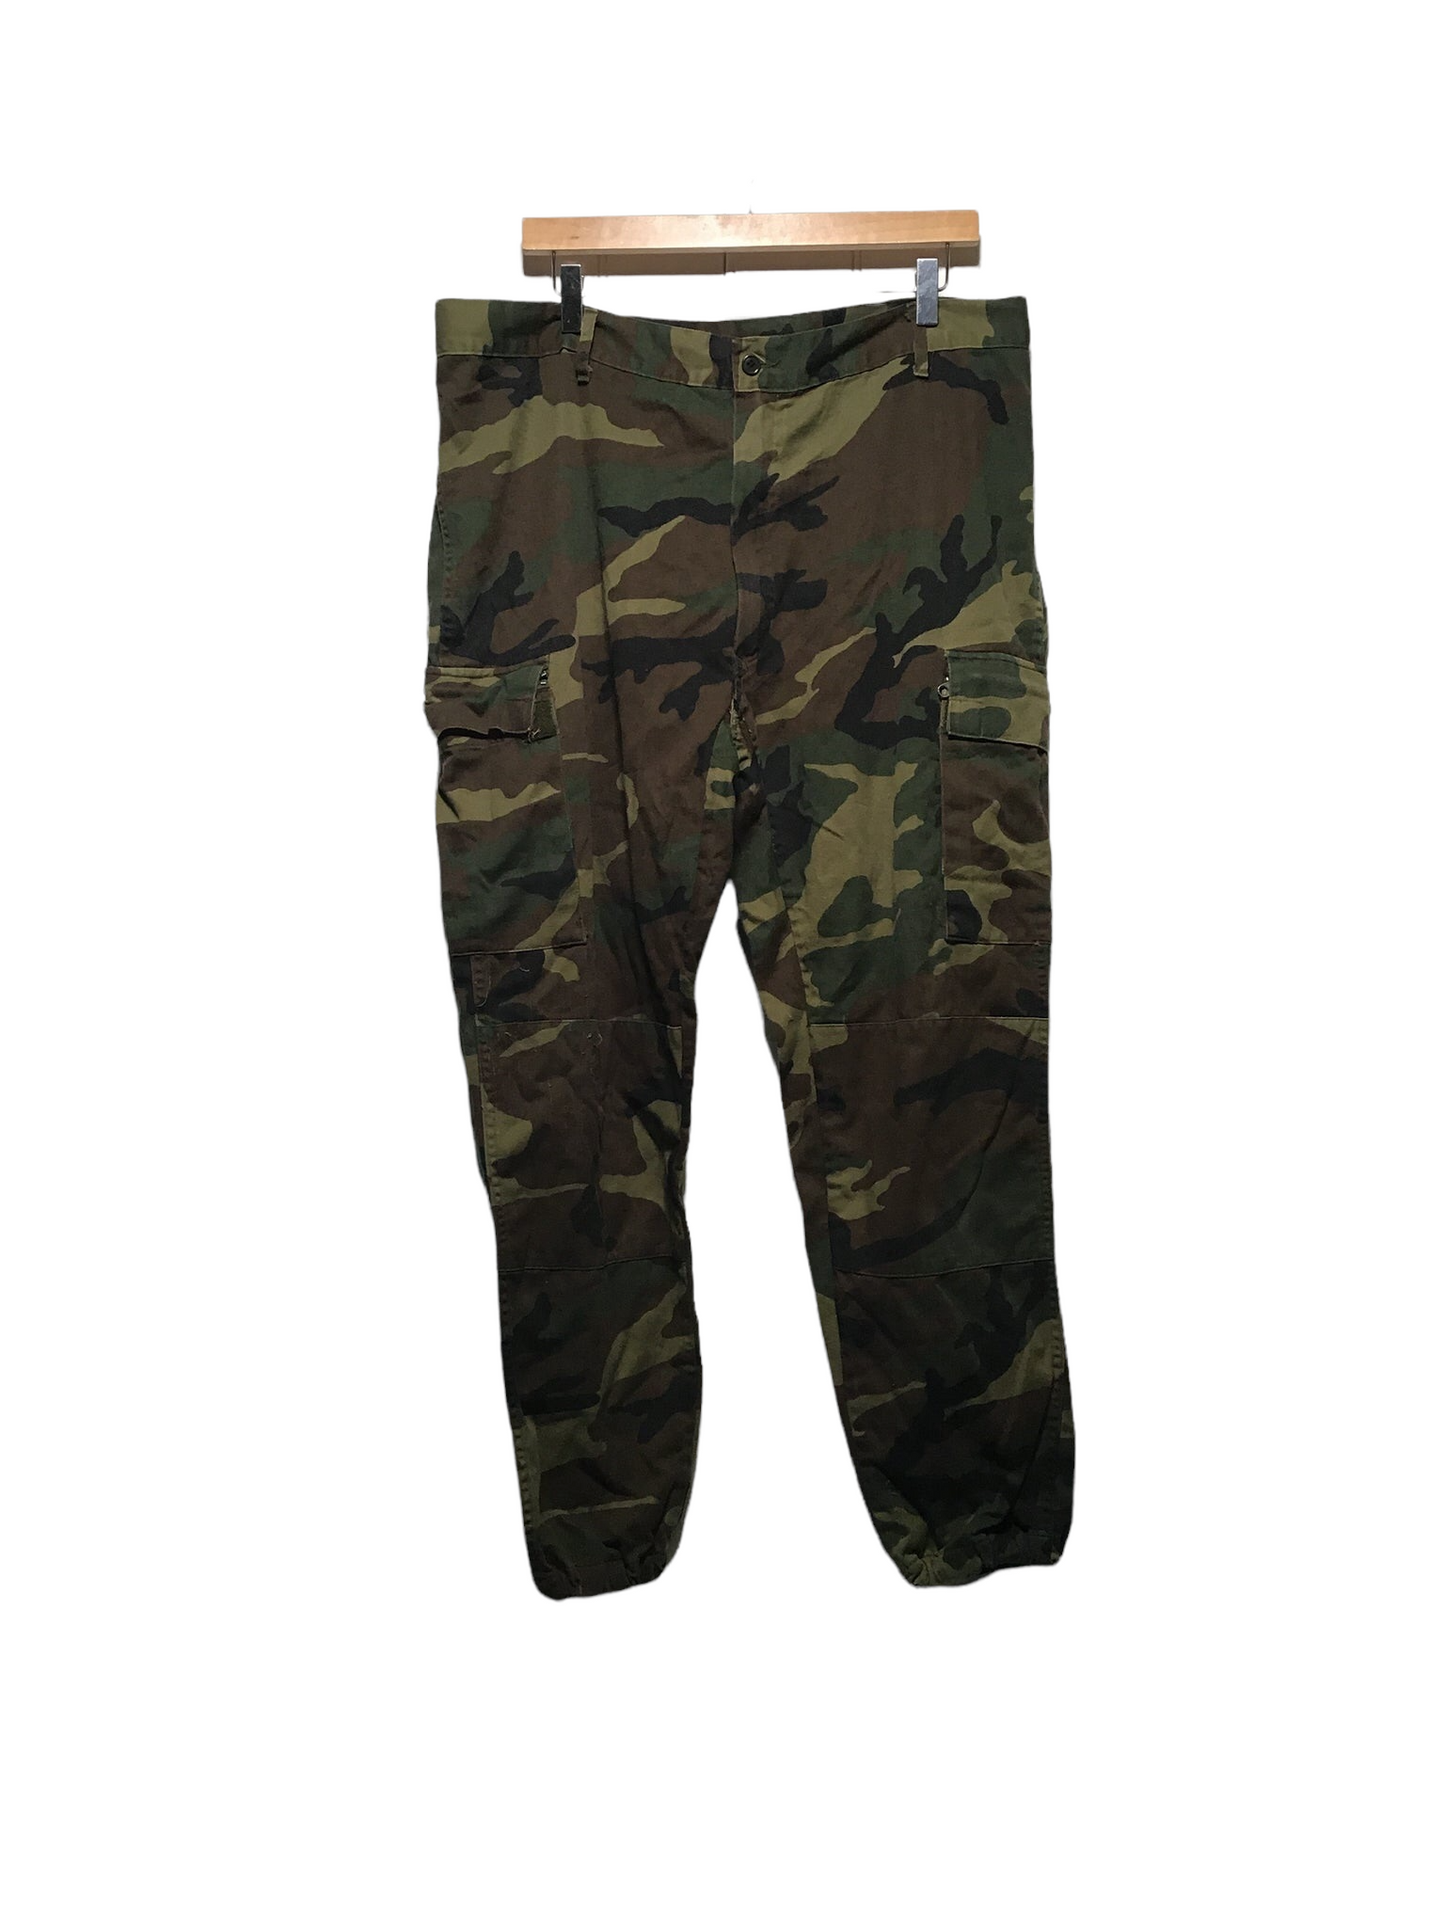 Army Pants (36X28)